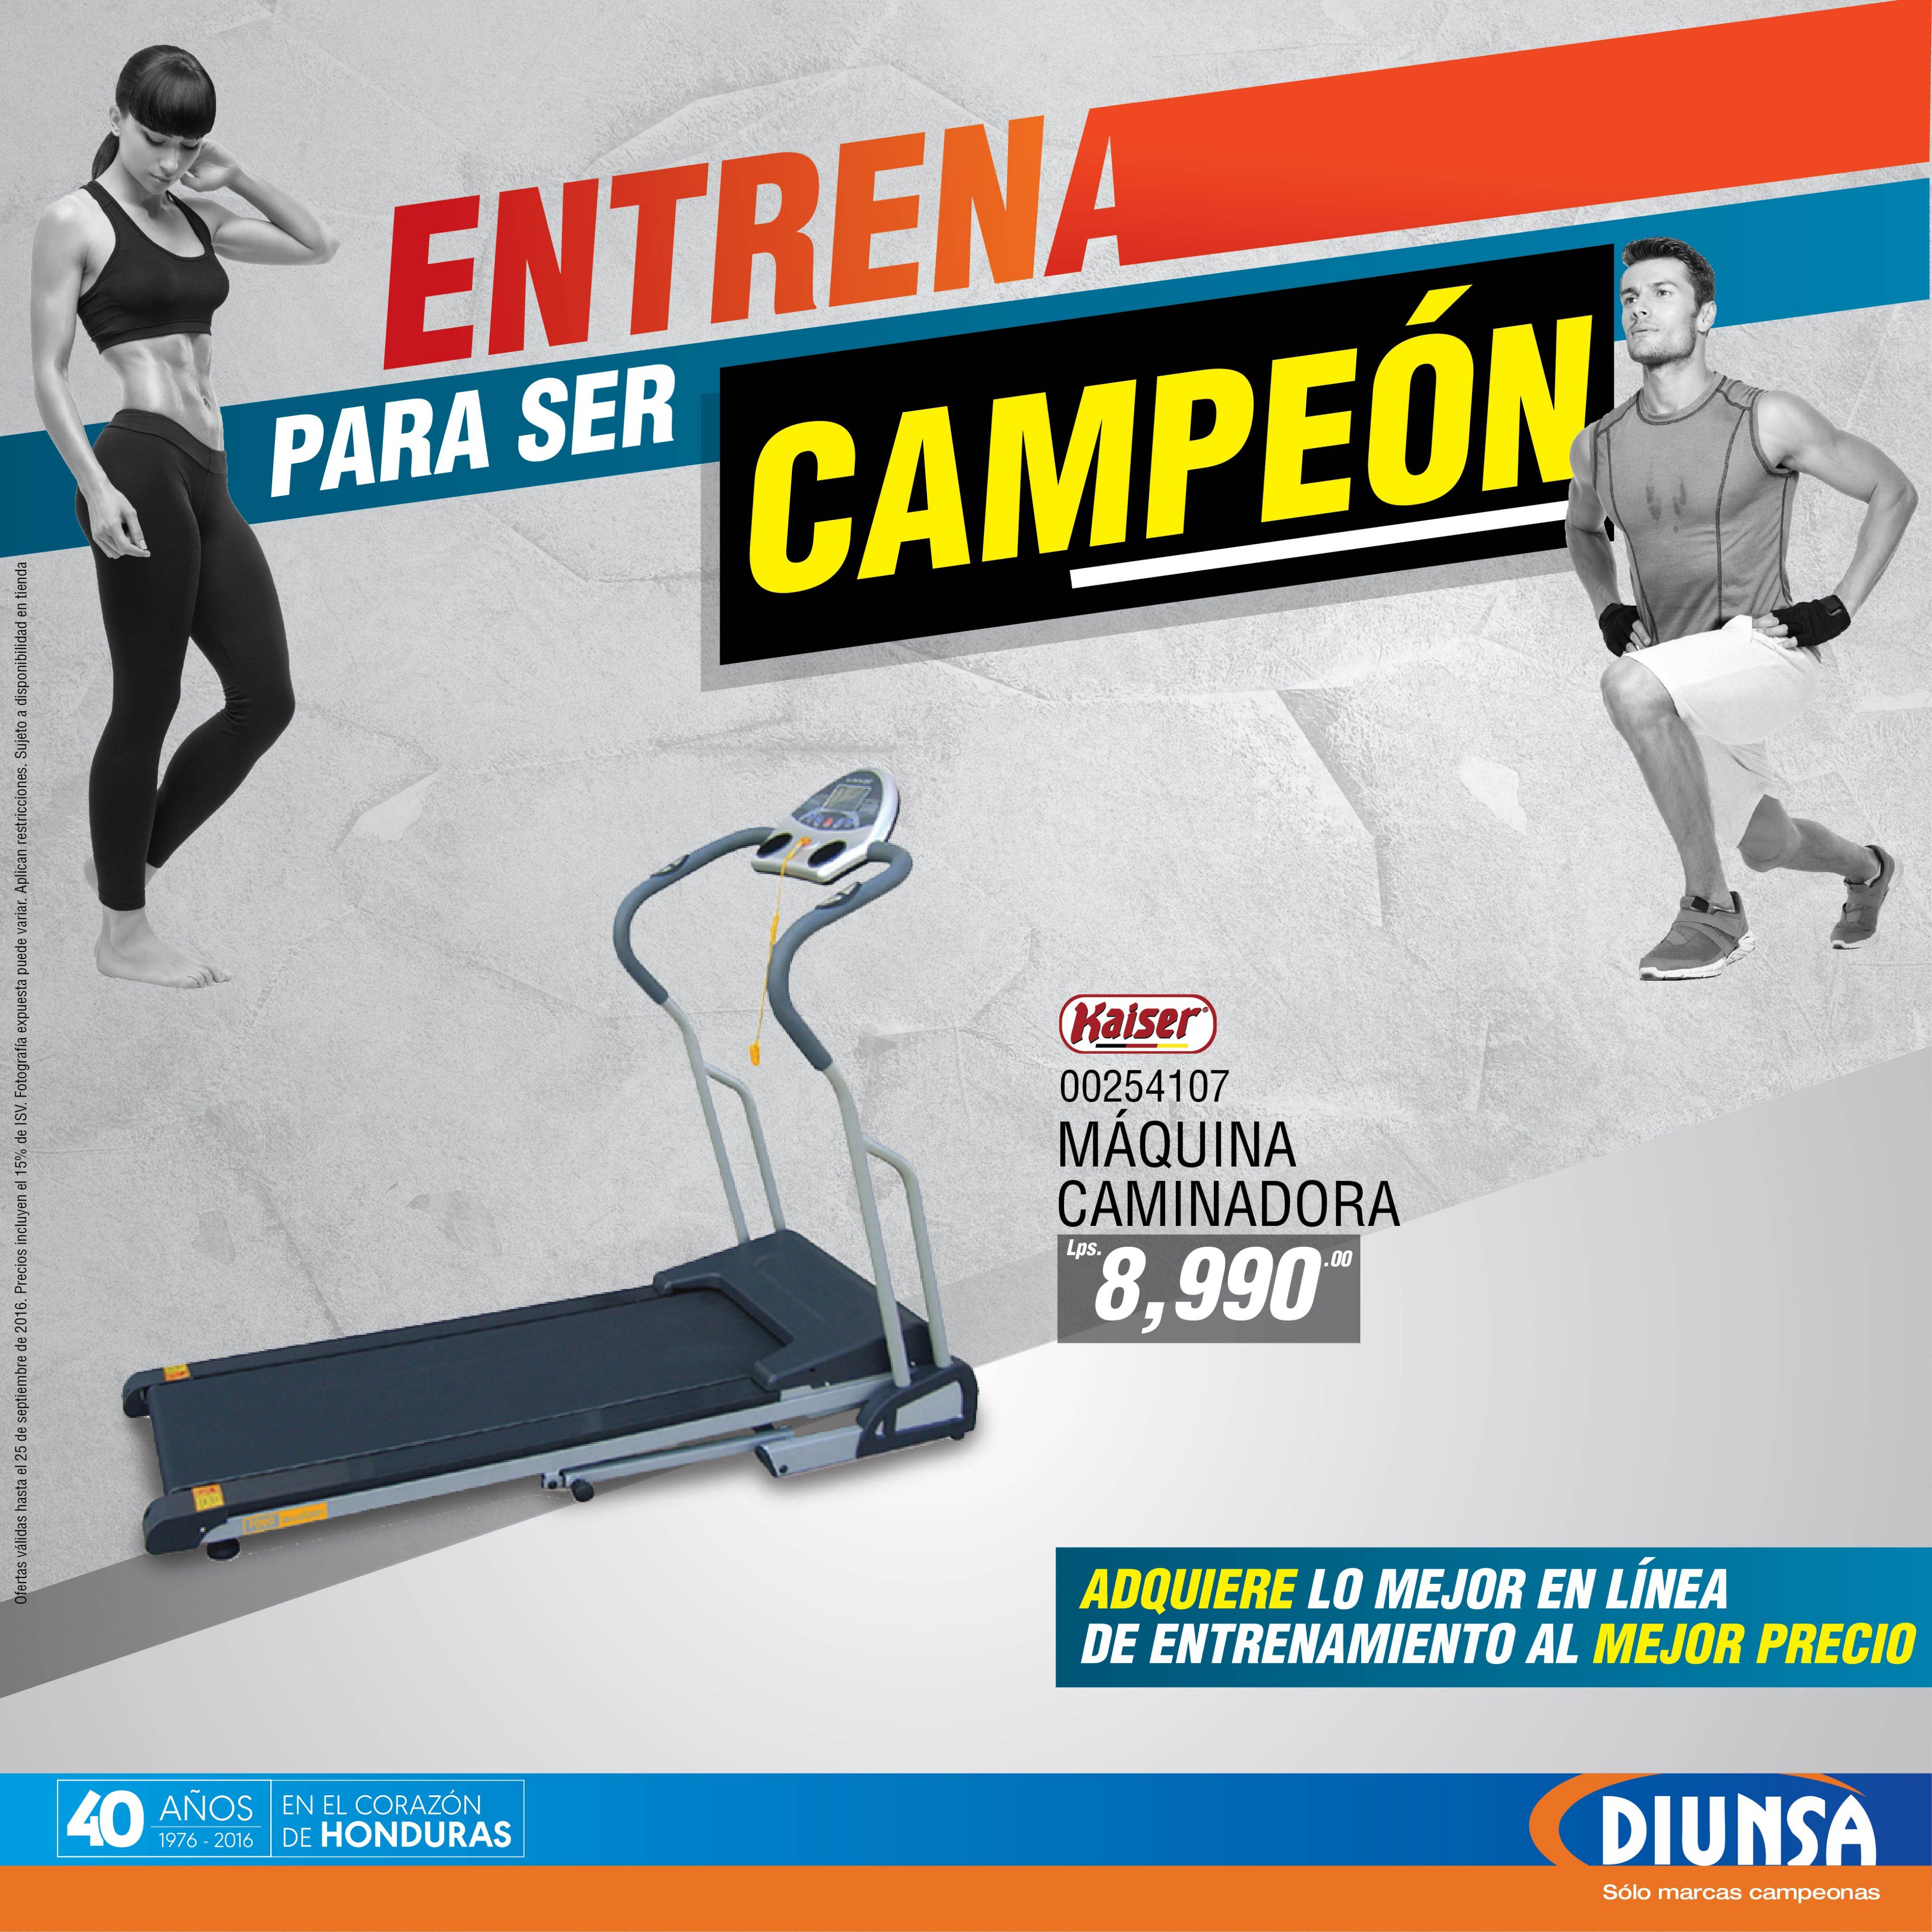 Diunsa on X: Entrena para ser un campeón #DIUNSA #Solomarcascampeonas  #Honduras  / X